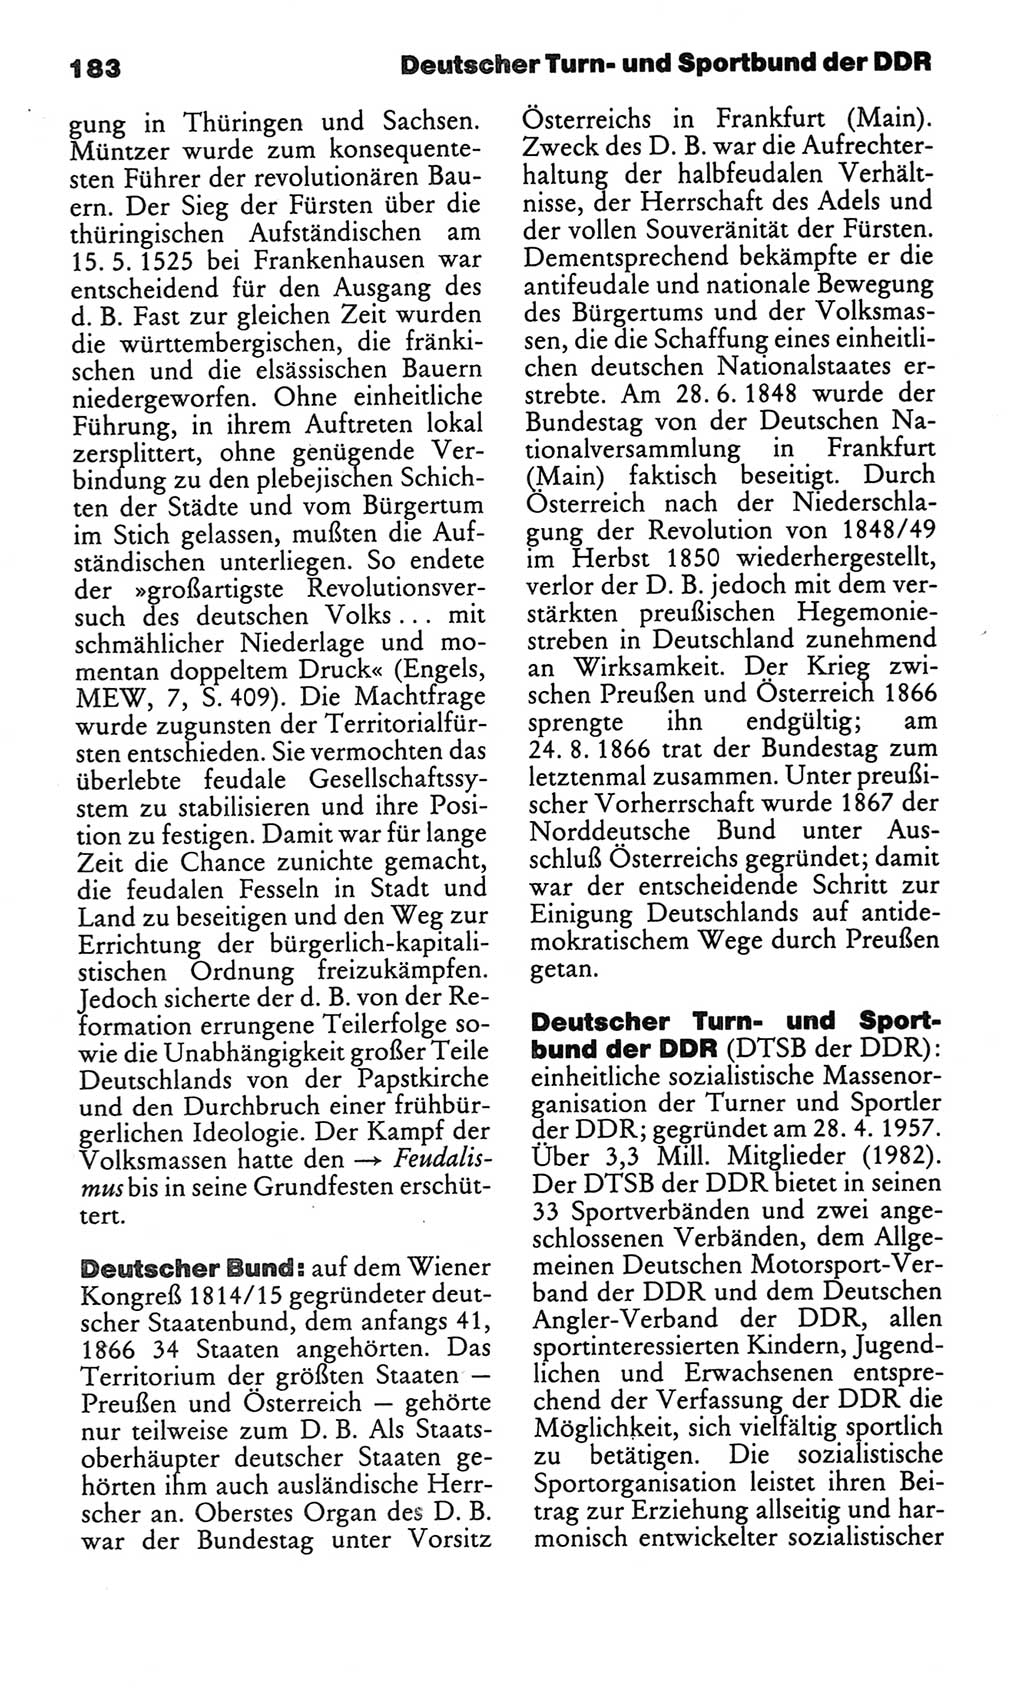 Kleines politisches Wörterbuch [Deutsche Demokratische Republik (DDR)] 1986, Seite 183 (Kl. pol. Wb. DDR 1986, S. 183)